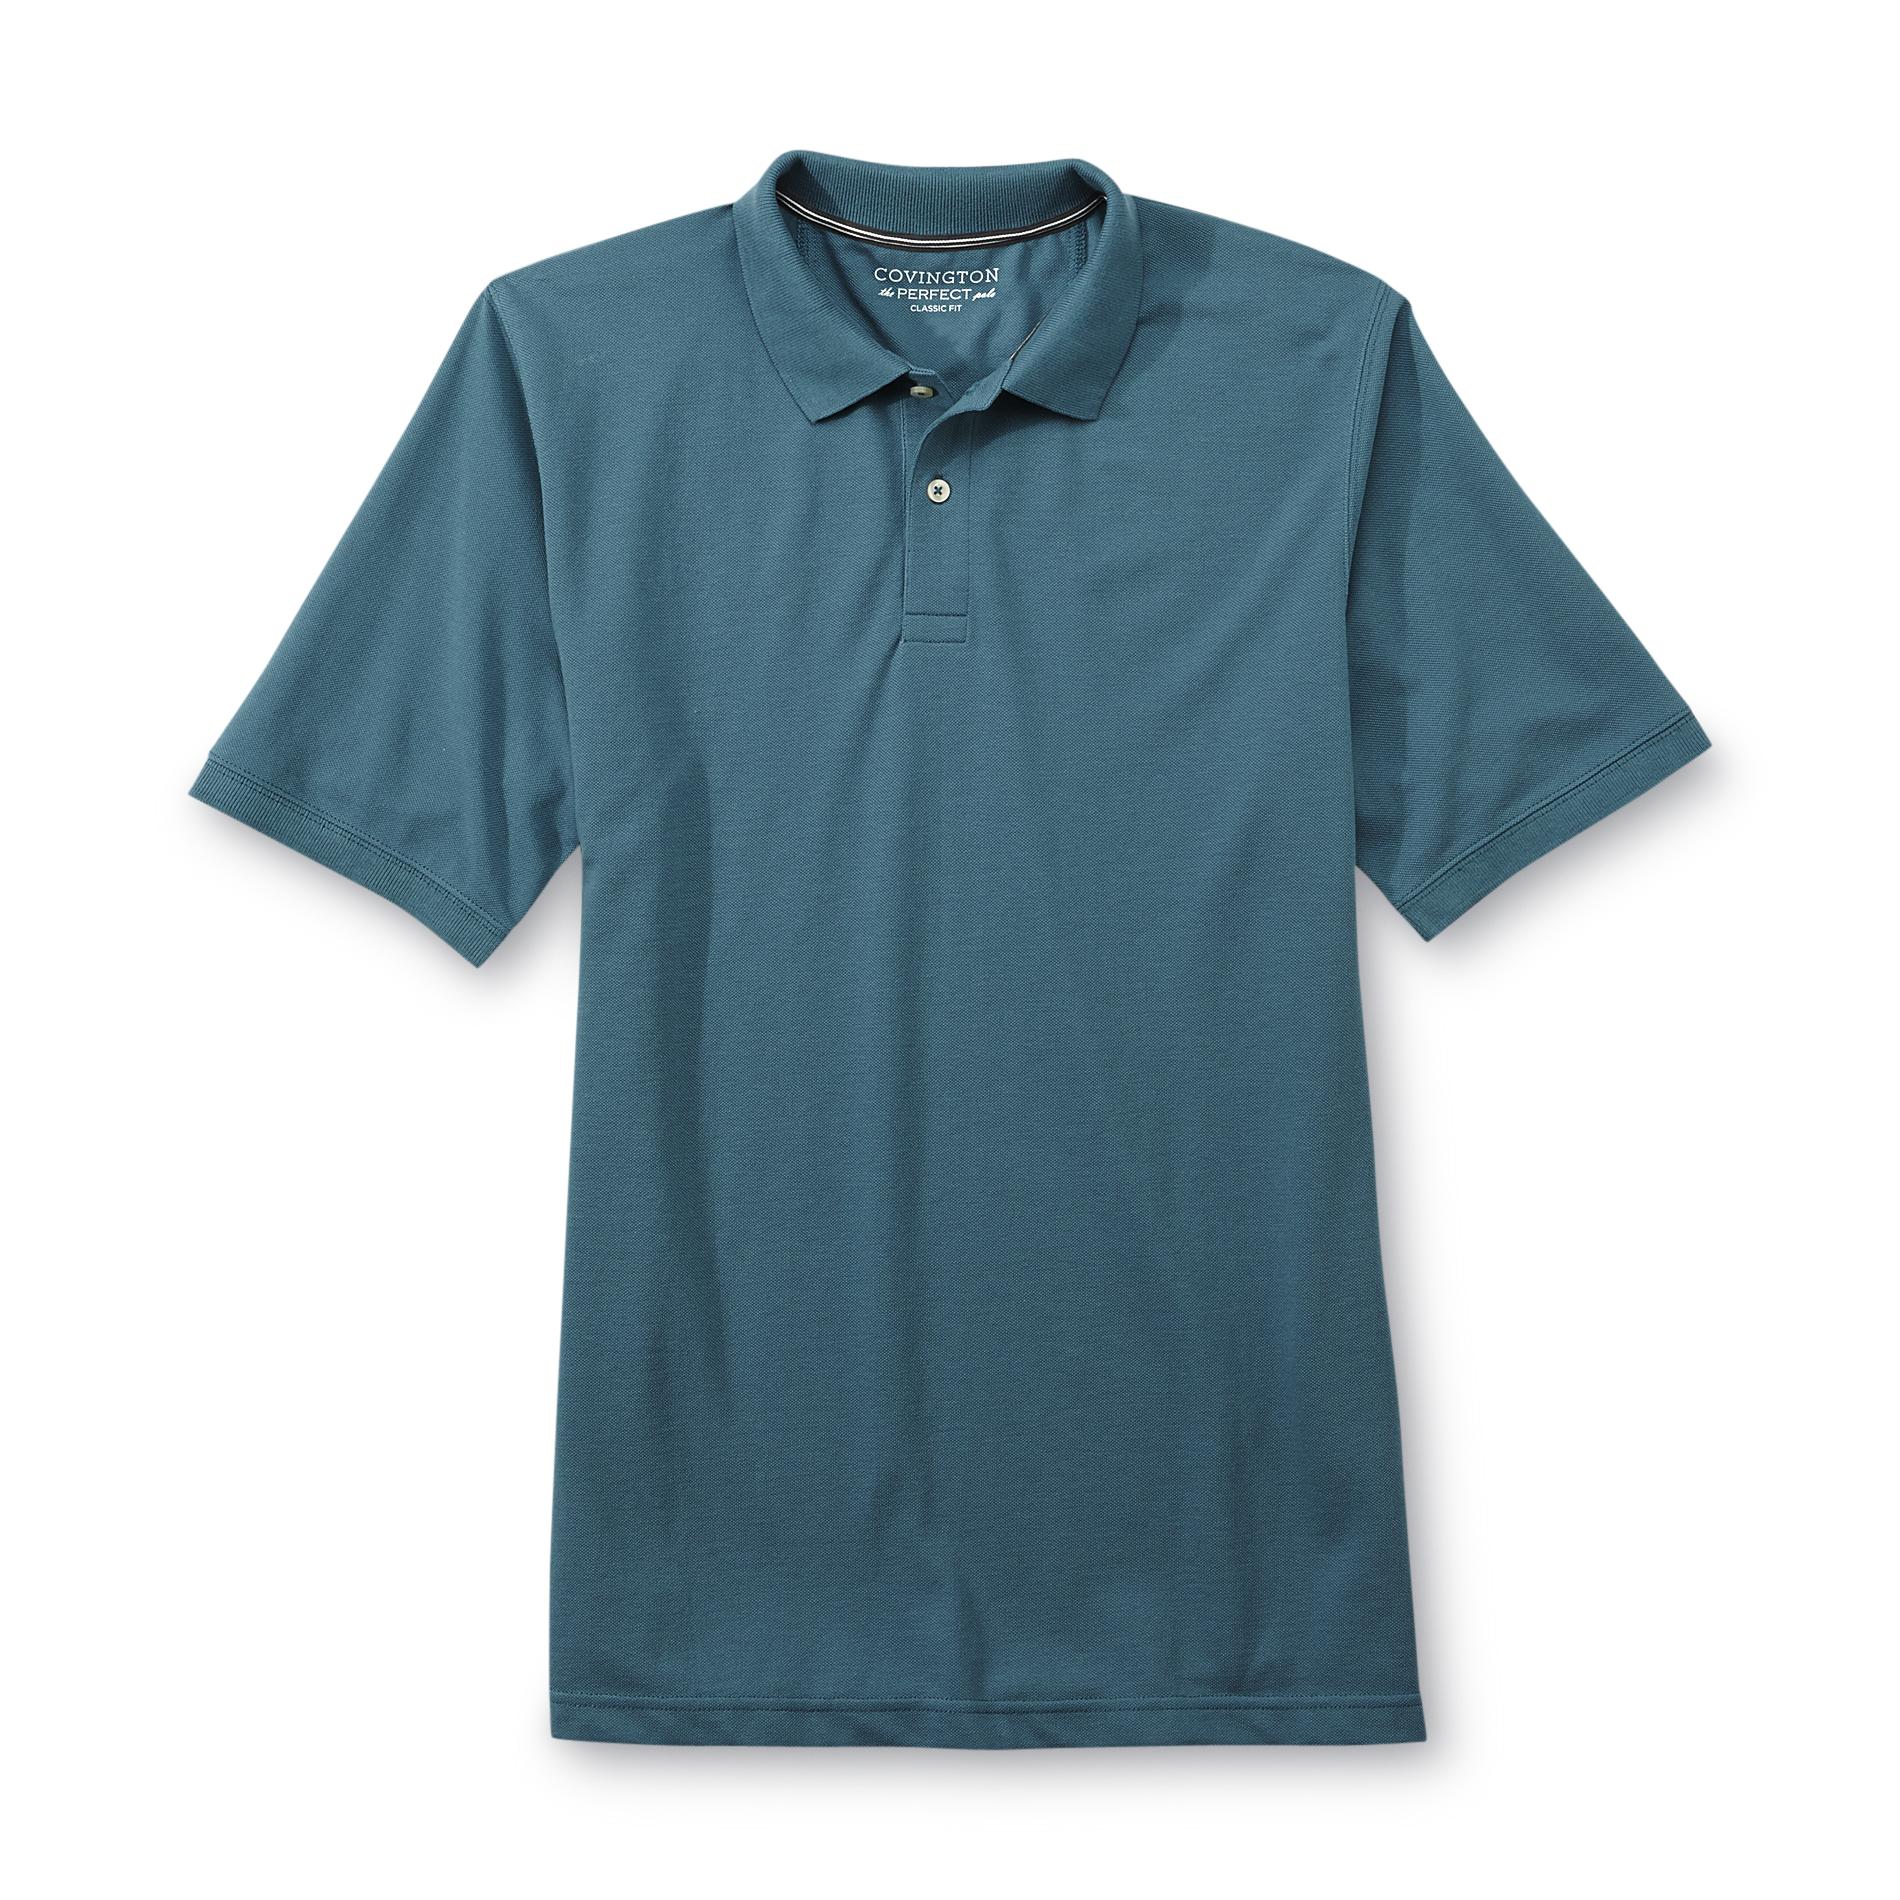 Covington Men's Pique Polo Shirt | Shop Your Way: Online Shopping ...